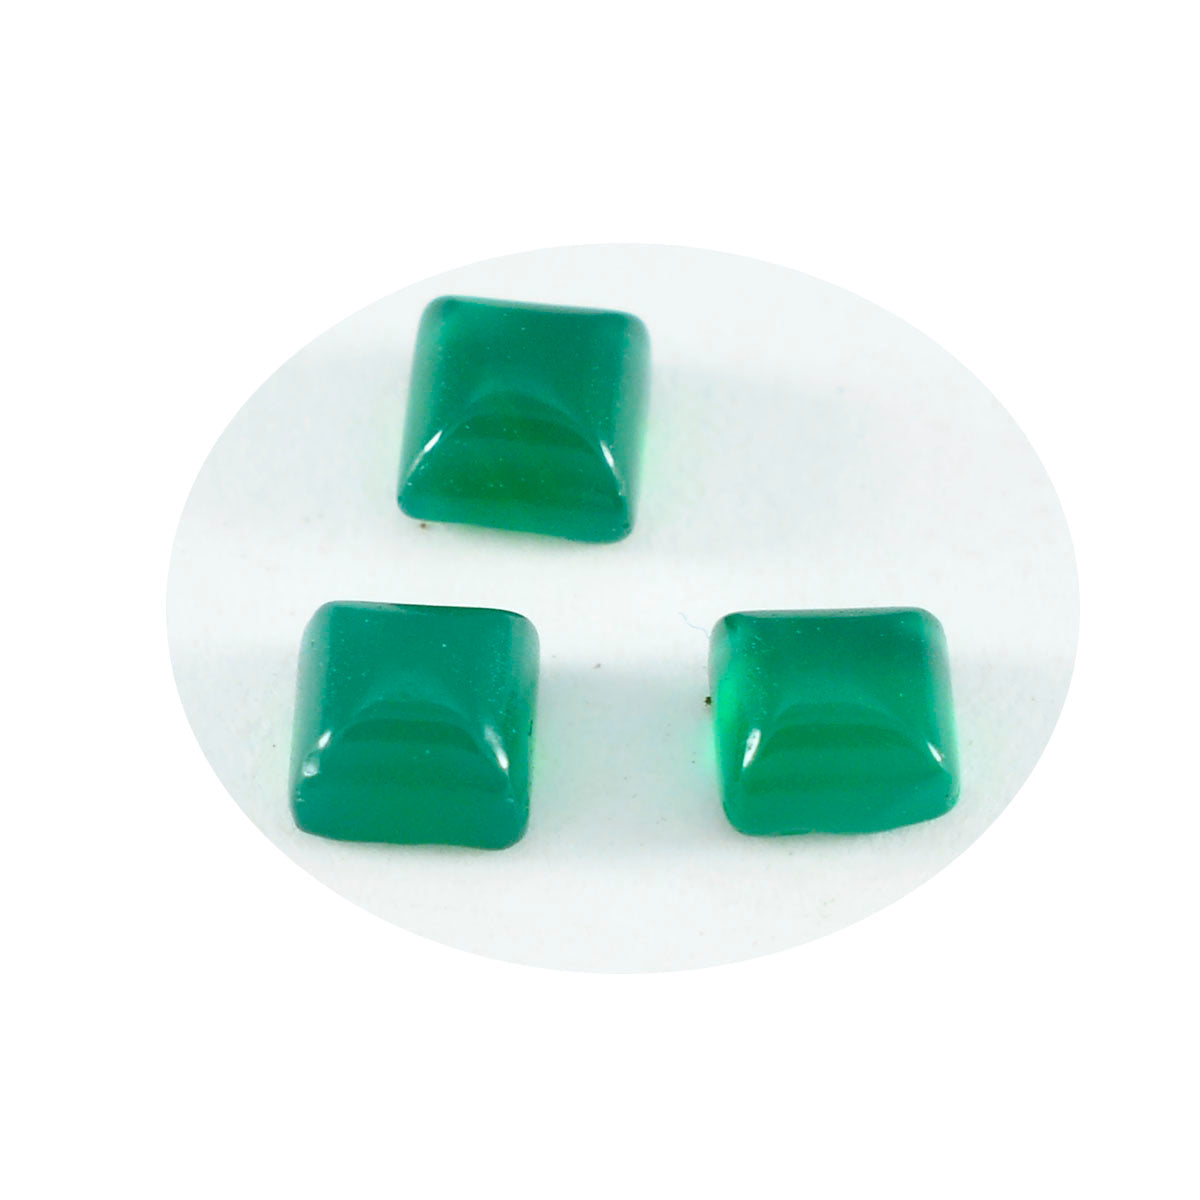 Riyogems 1PC groene onyx cabochon 7x7 mm vierkante vorm mooie kwaliteit losse steen